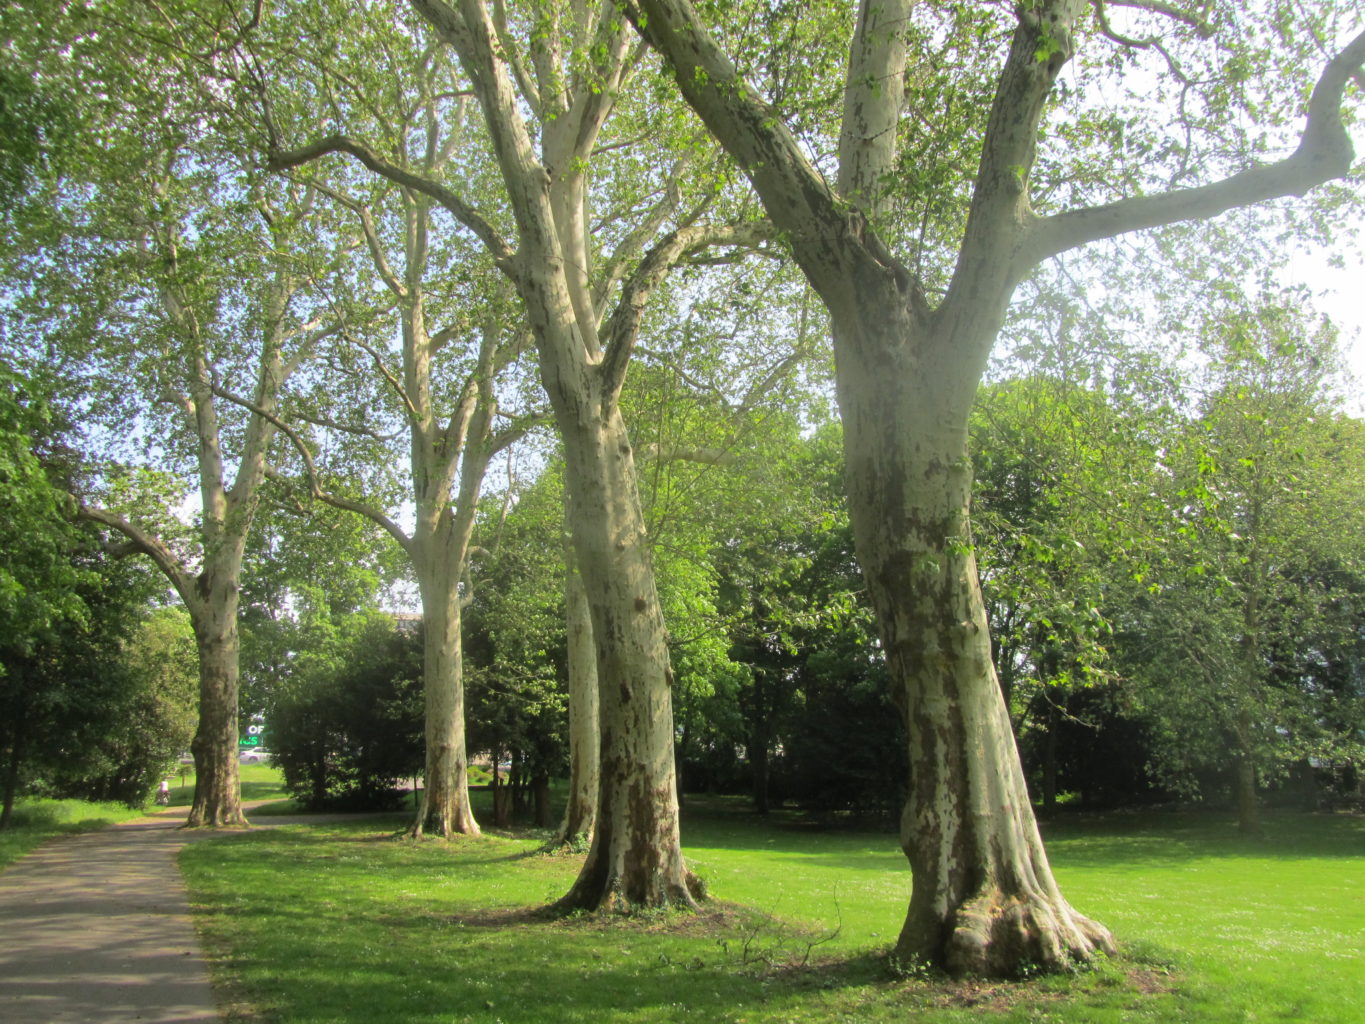 Bäume im Willy-Brandt-Park (Südteil)